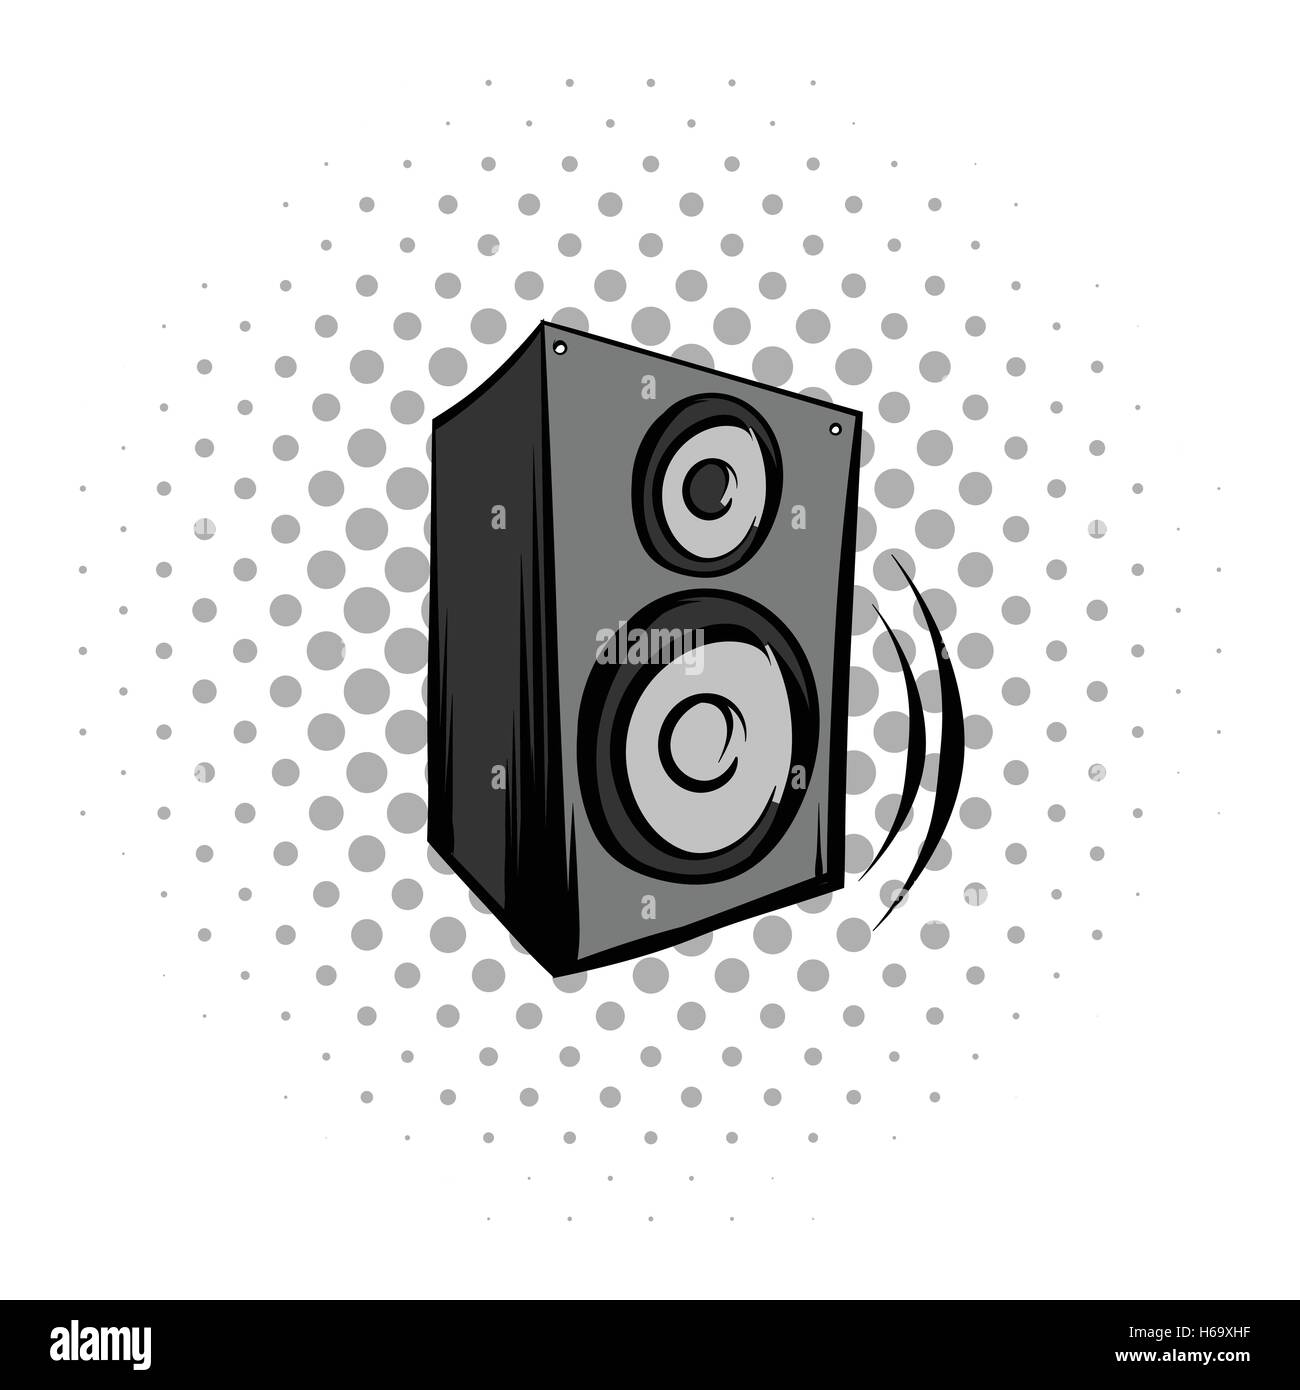 Audio speaker comics icon Stock Vector